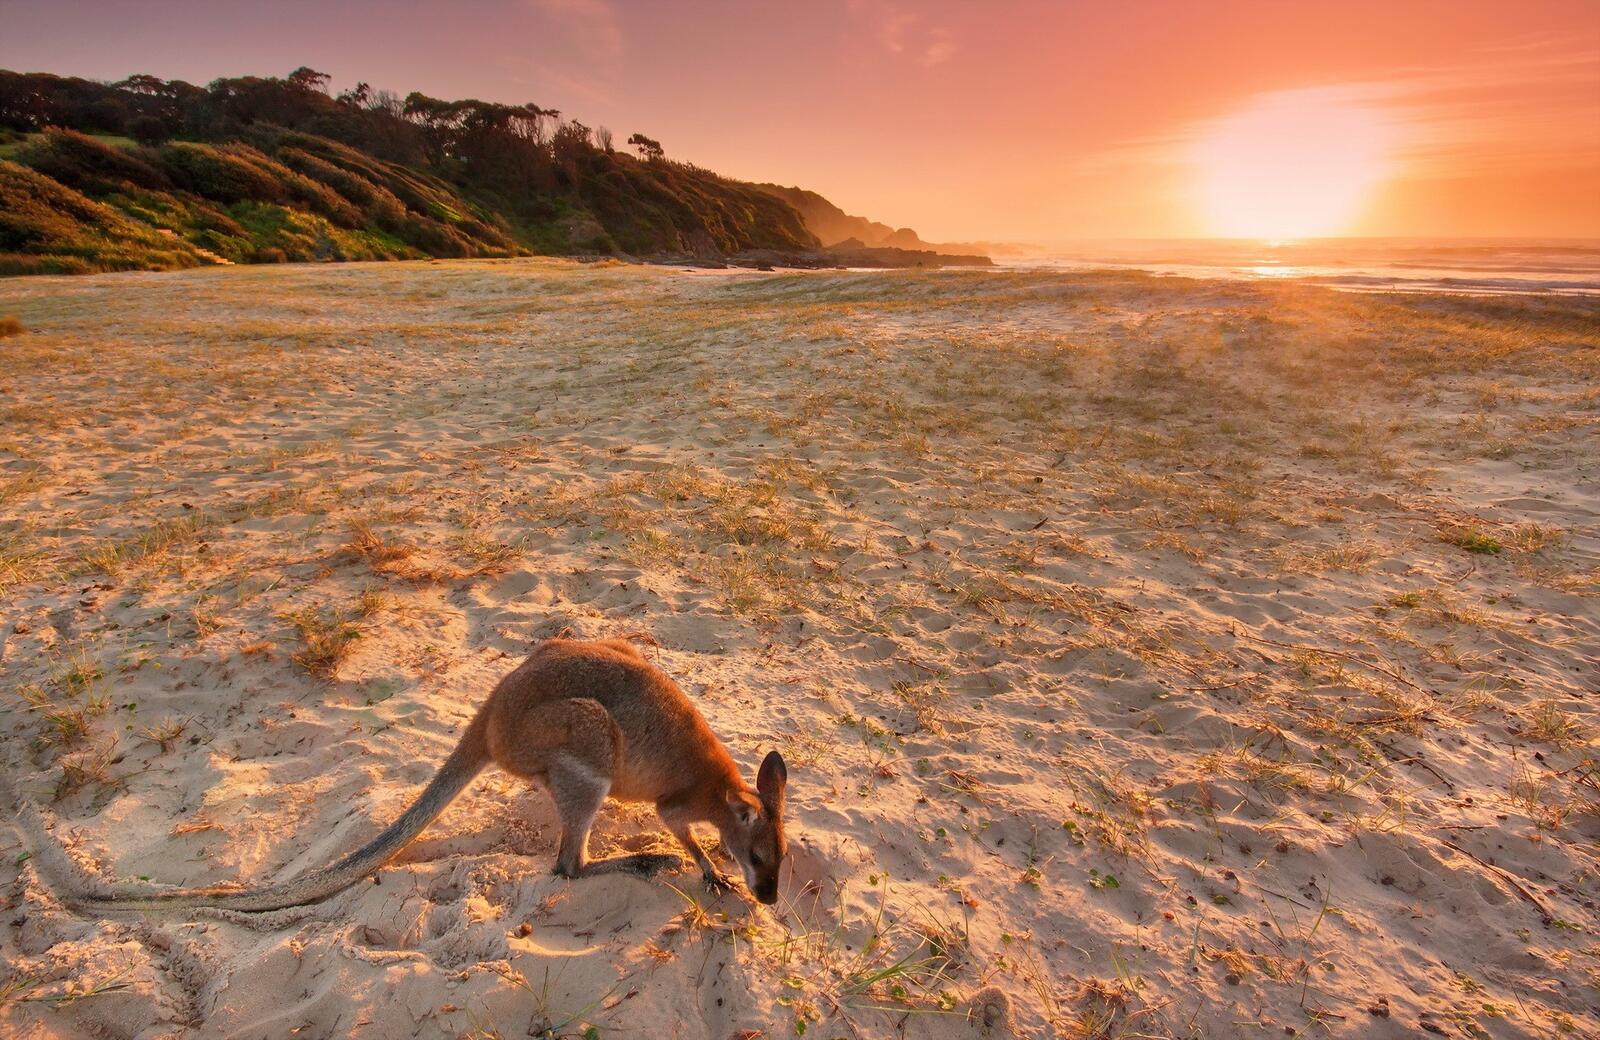 Обои животные Австралия пляж на рабочий стол